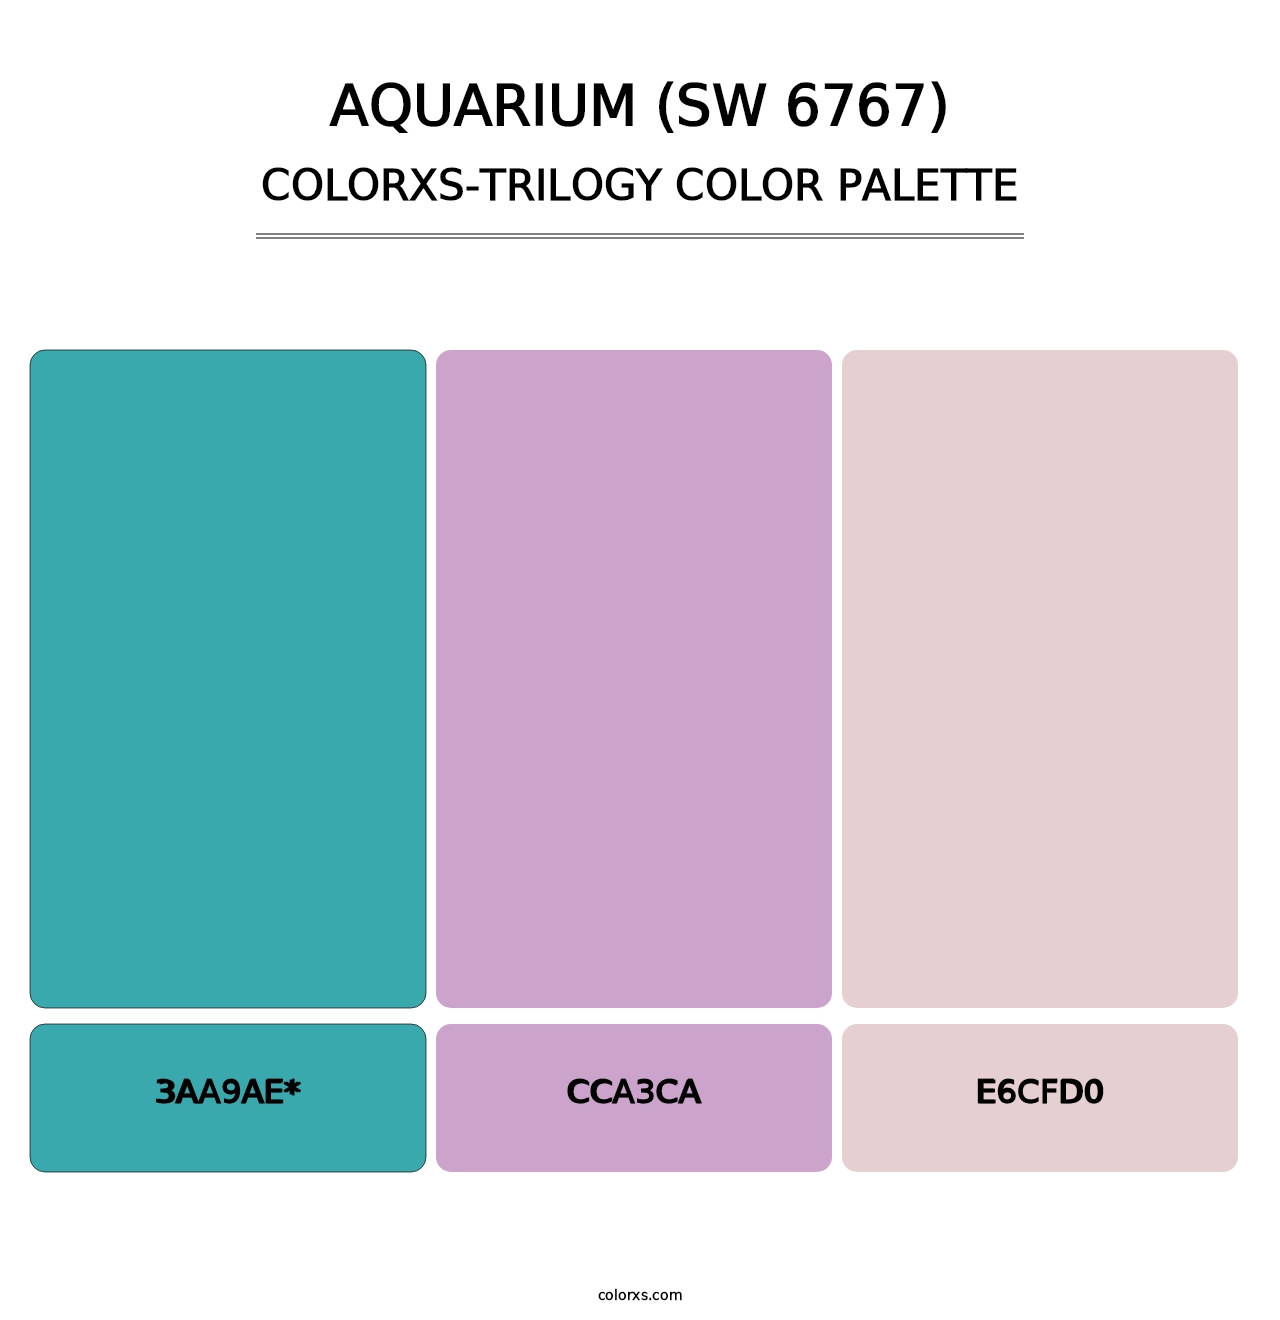 Aquarium (SW 6767) - Colorxs Trilogy Palette